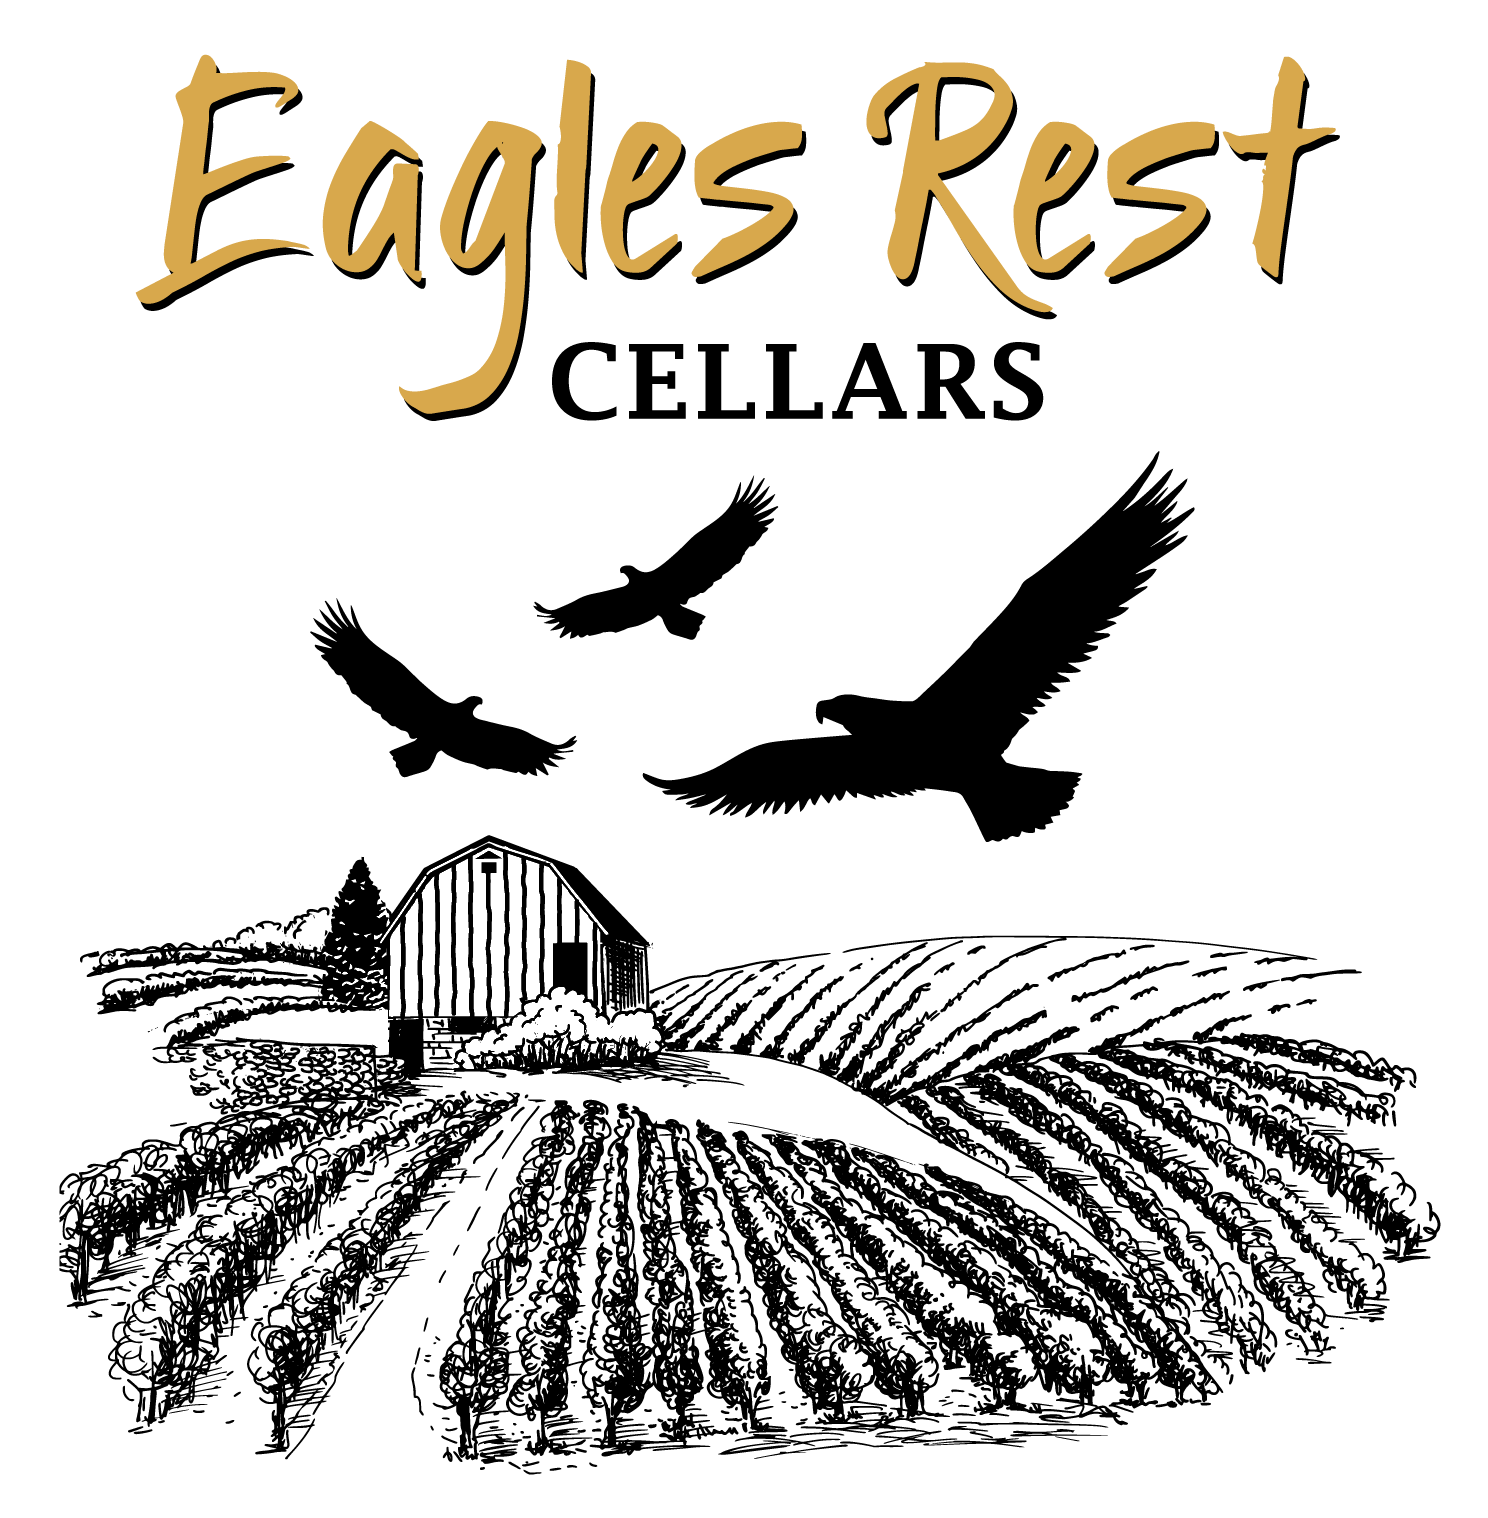 Eagles Rest Cellars